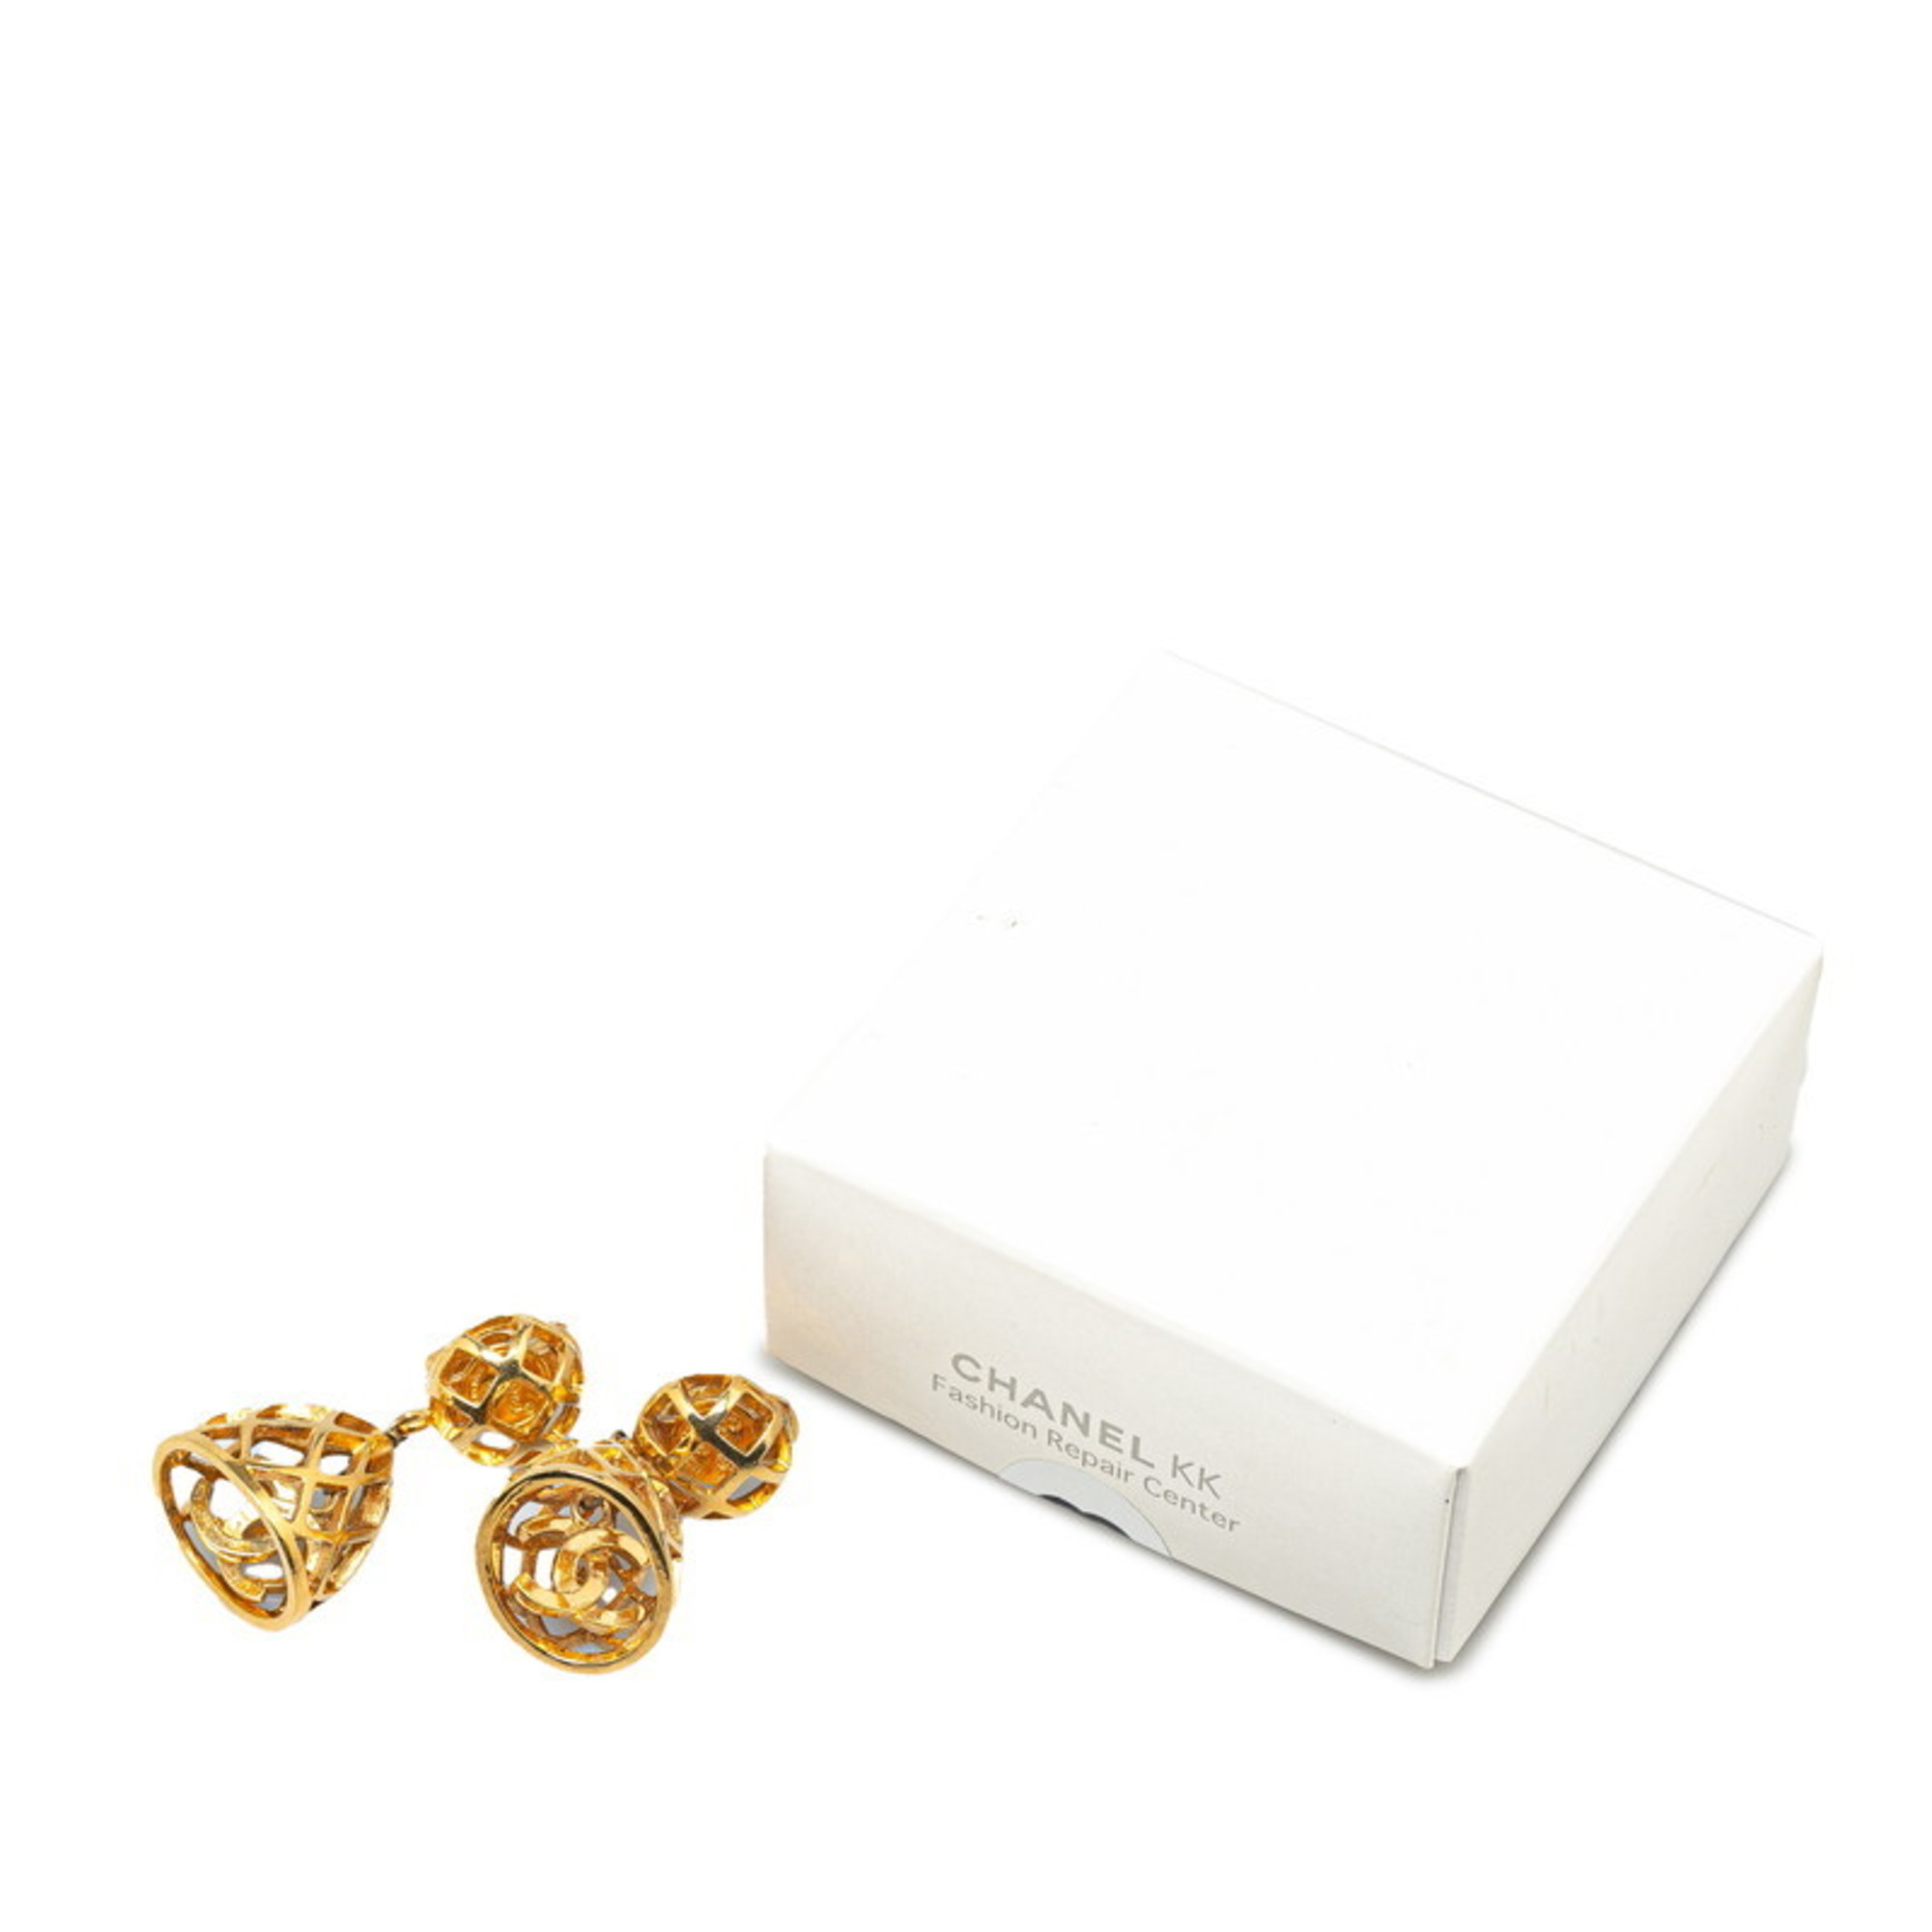 Chanel Birdcage motif Coco mark swing earrings gold plated women's CHANEL